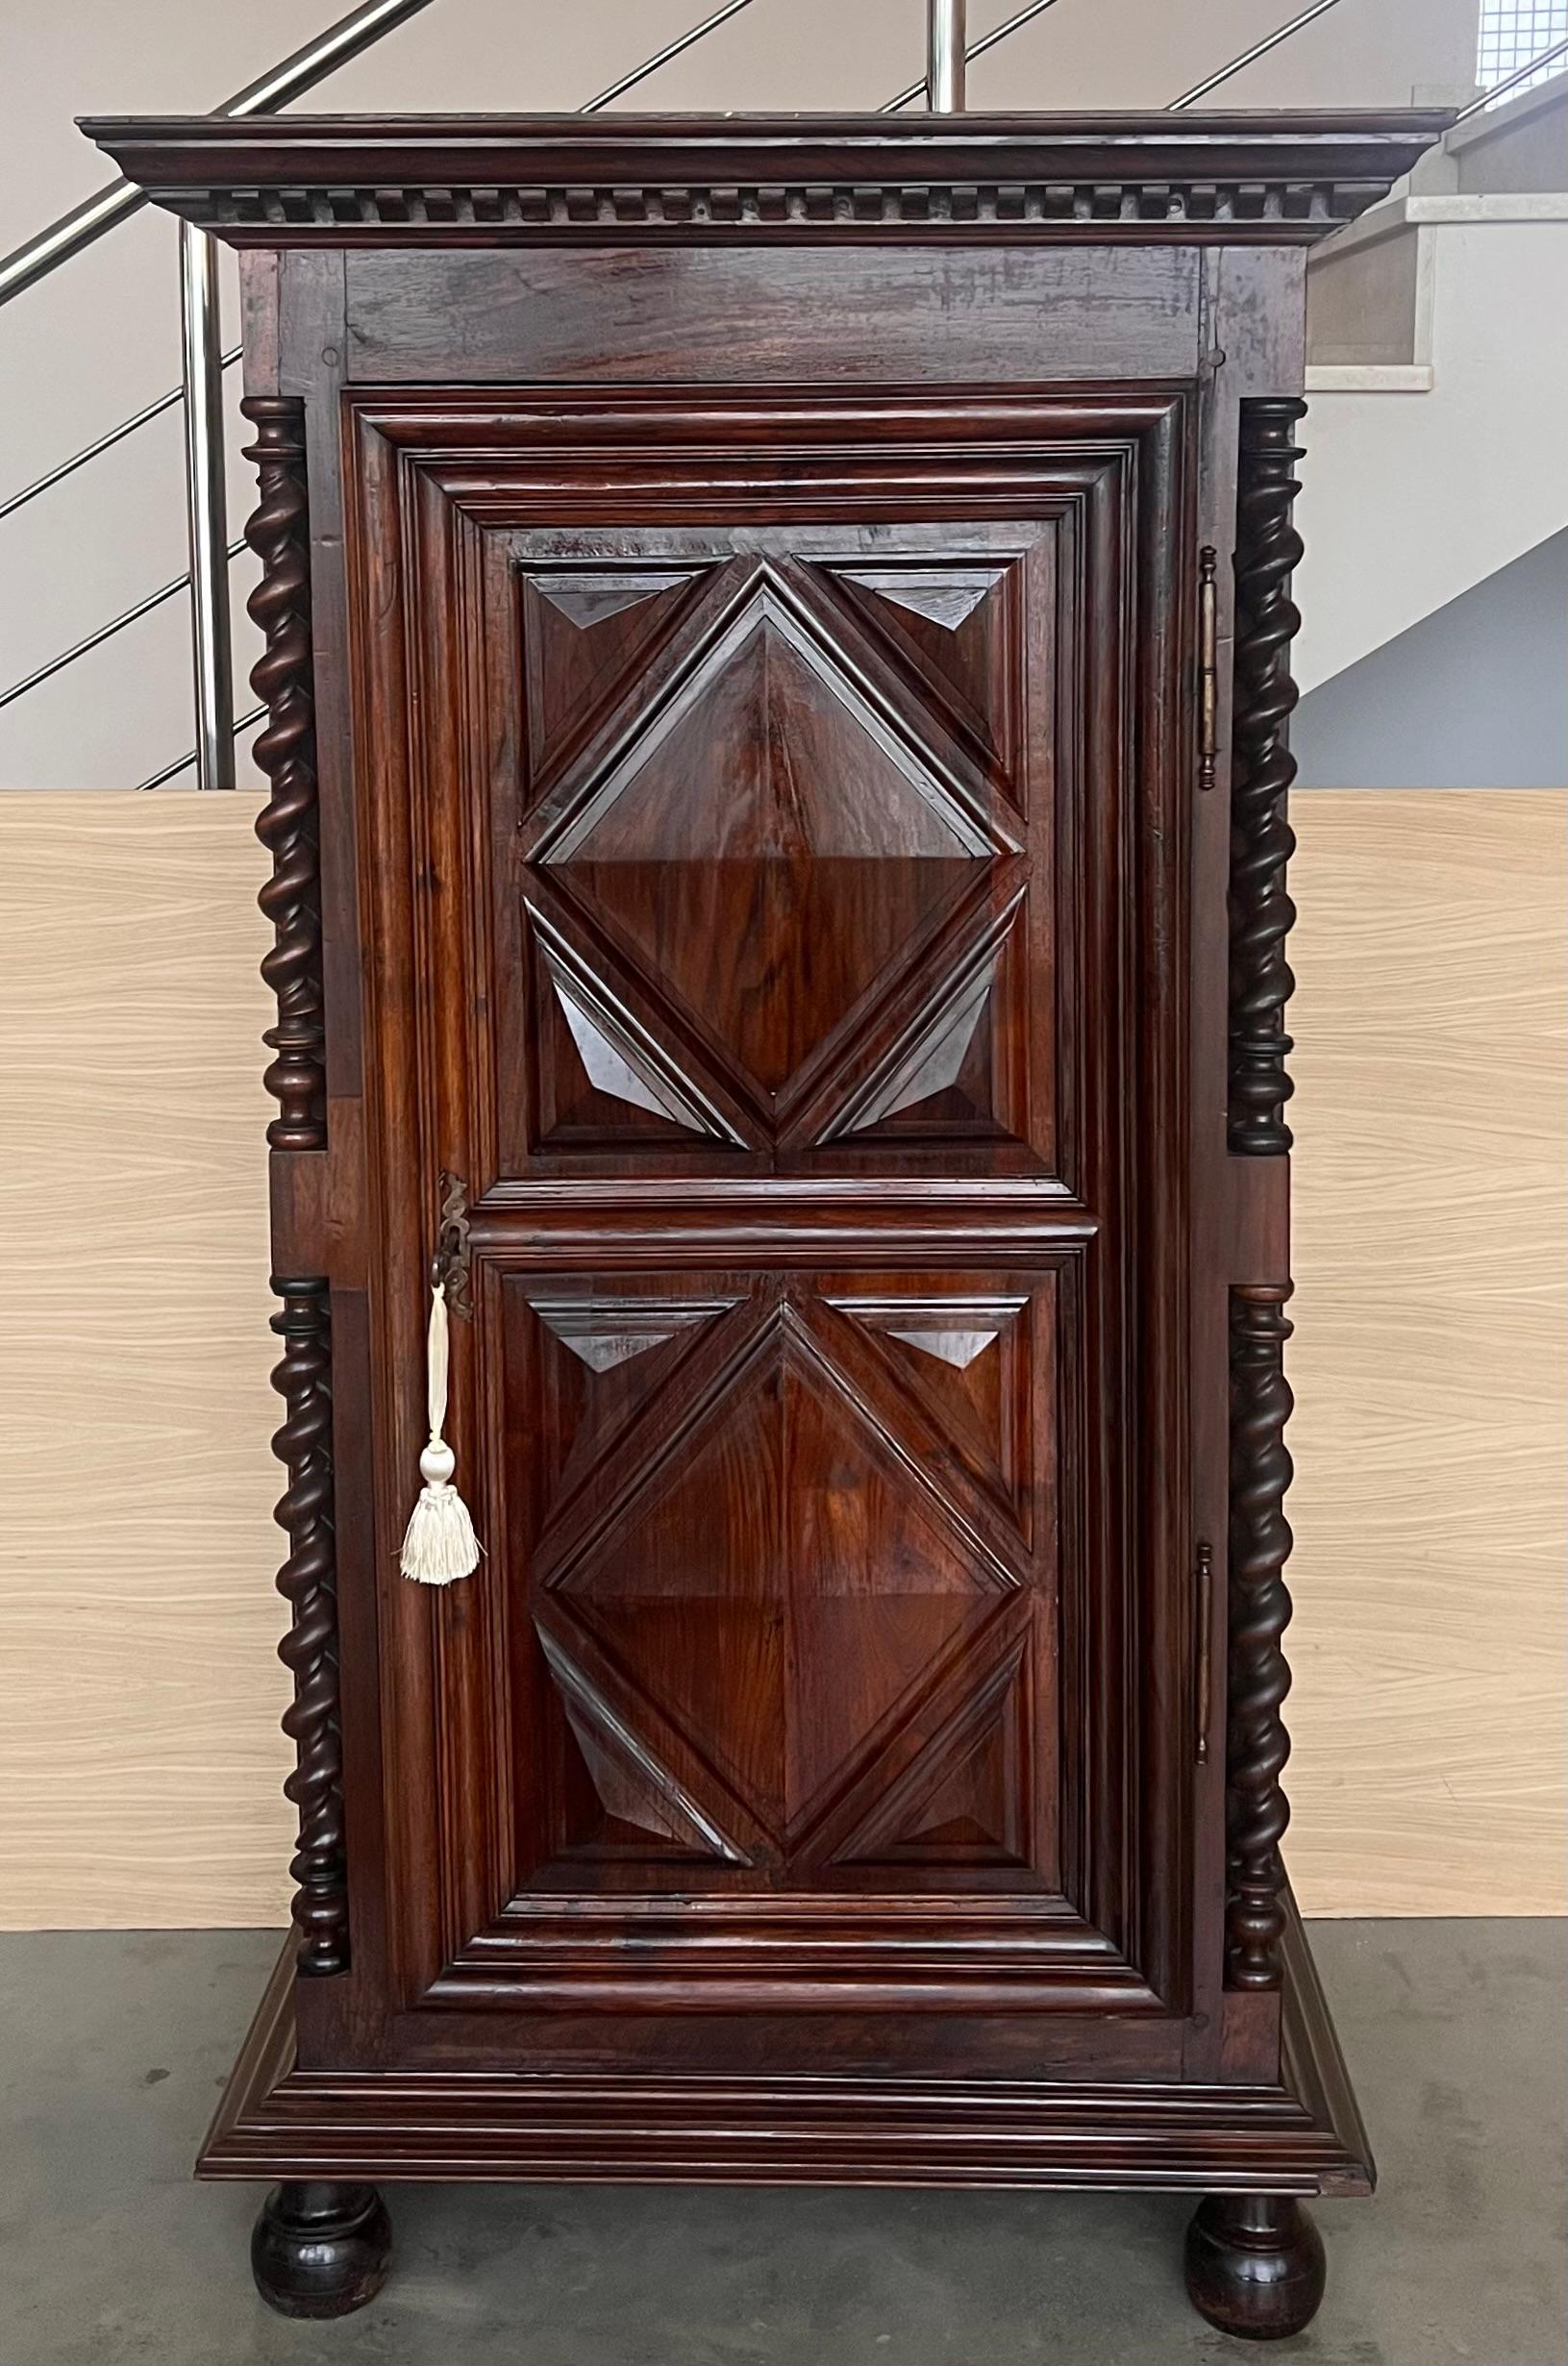 Ein exquisiter holländischer Kissenschrank mit zwei Türen. Dieser Schrank hat seinen Namen von den kissenförmigen Verdickungen an den Türen. Die Türen werden von halbrunden, ebenholzfurnierten Säulen flankiert. 
Dieser Schrank ist aus feinstem